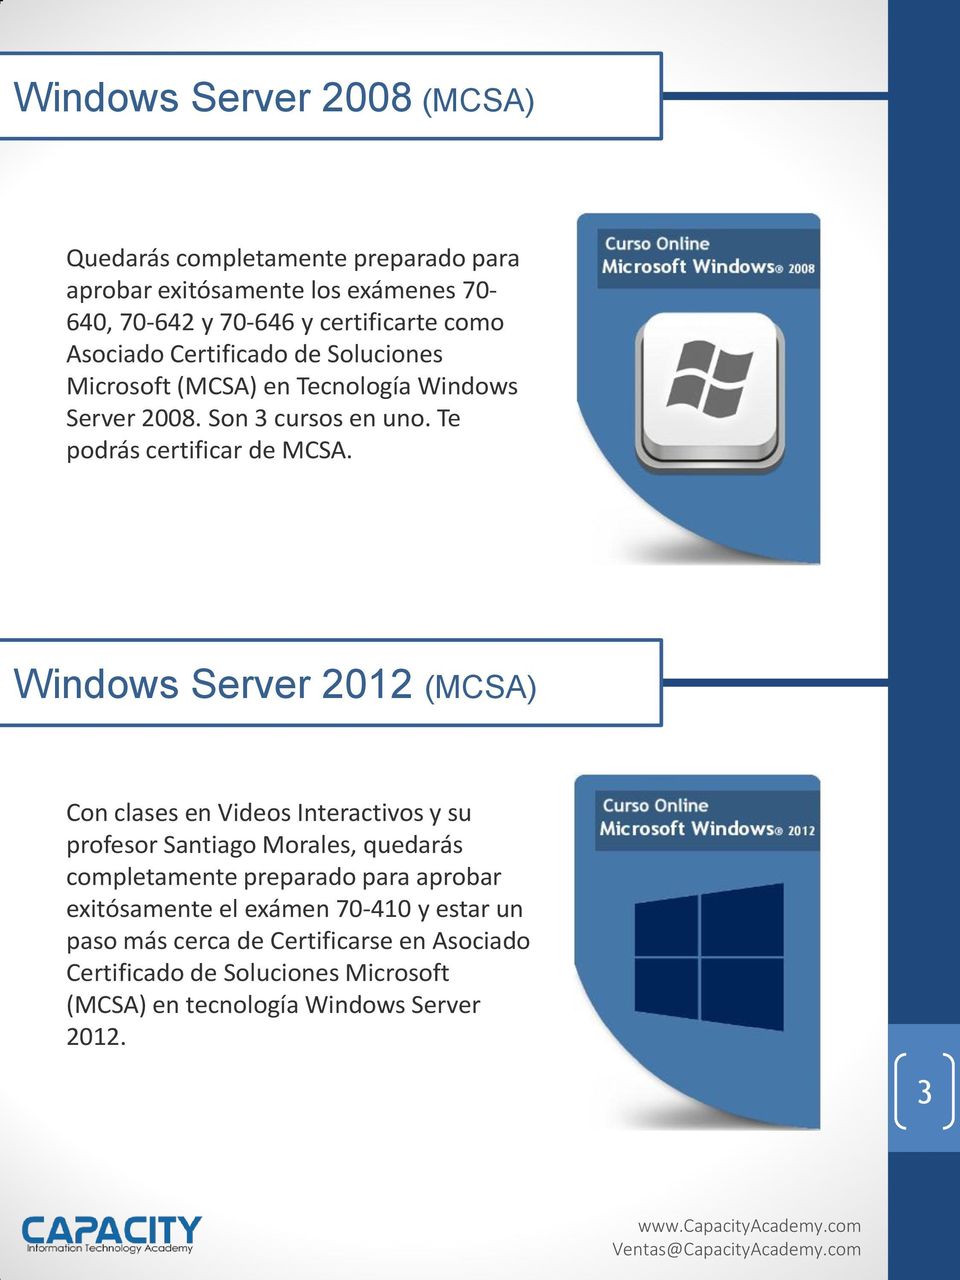 Windows Server 2012 (MCSA) Con clases en Videos Interactivos y su profesor Santiago Morales, quedarás completamente preparado para aprobar